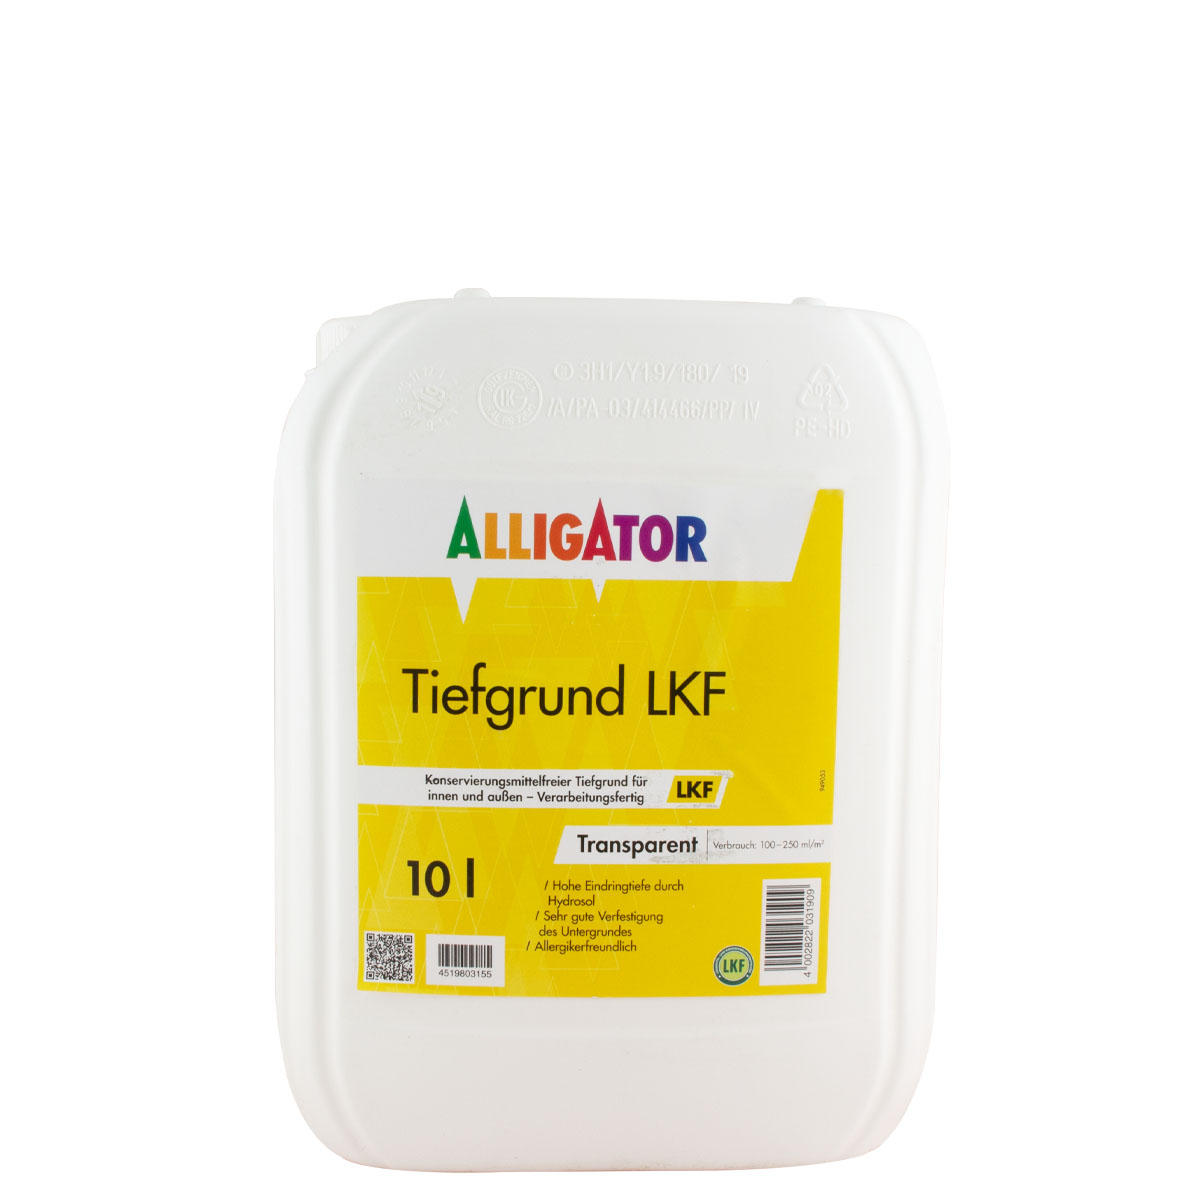 Alligator Tiefgrund LKF 10L farblos, Verarbeitungsfertig, Hydrosol